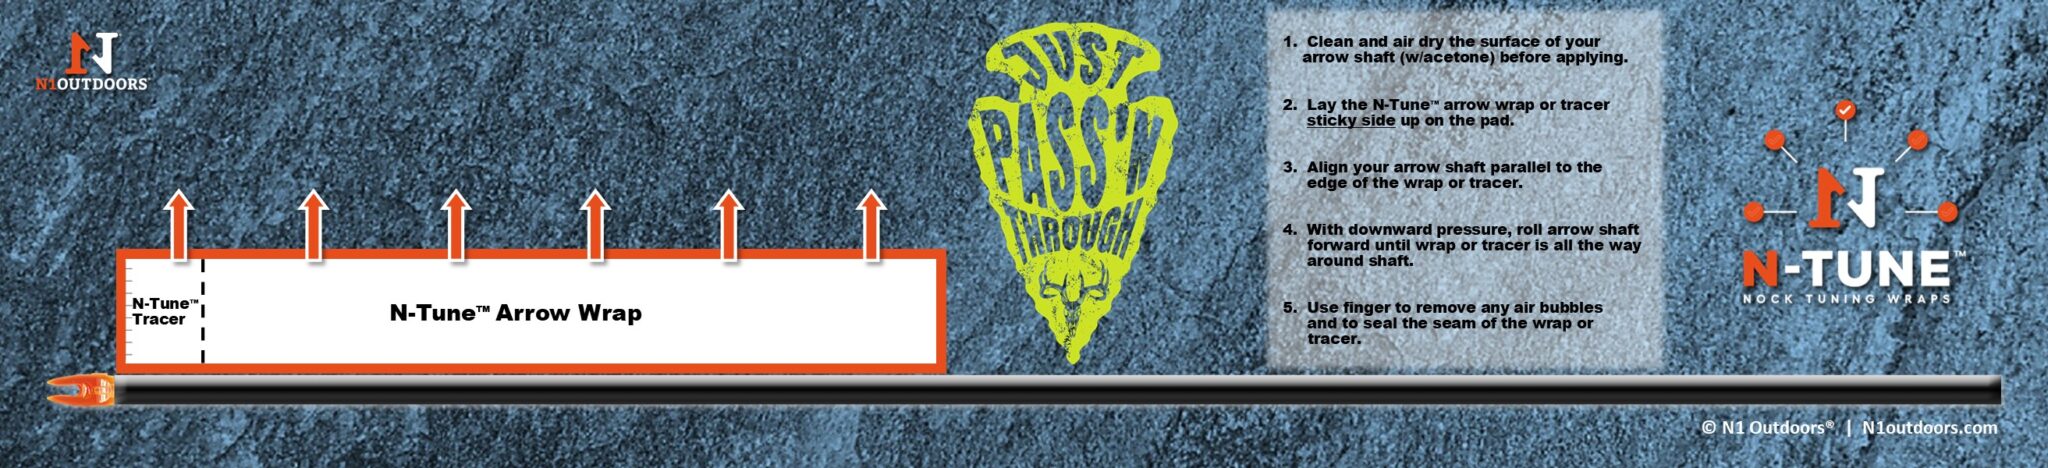 Just Pass'N Through Arrowhead Arrow Wrap Pad